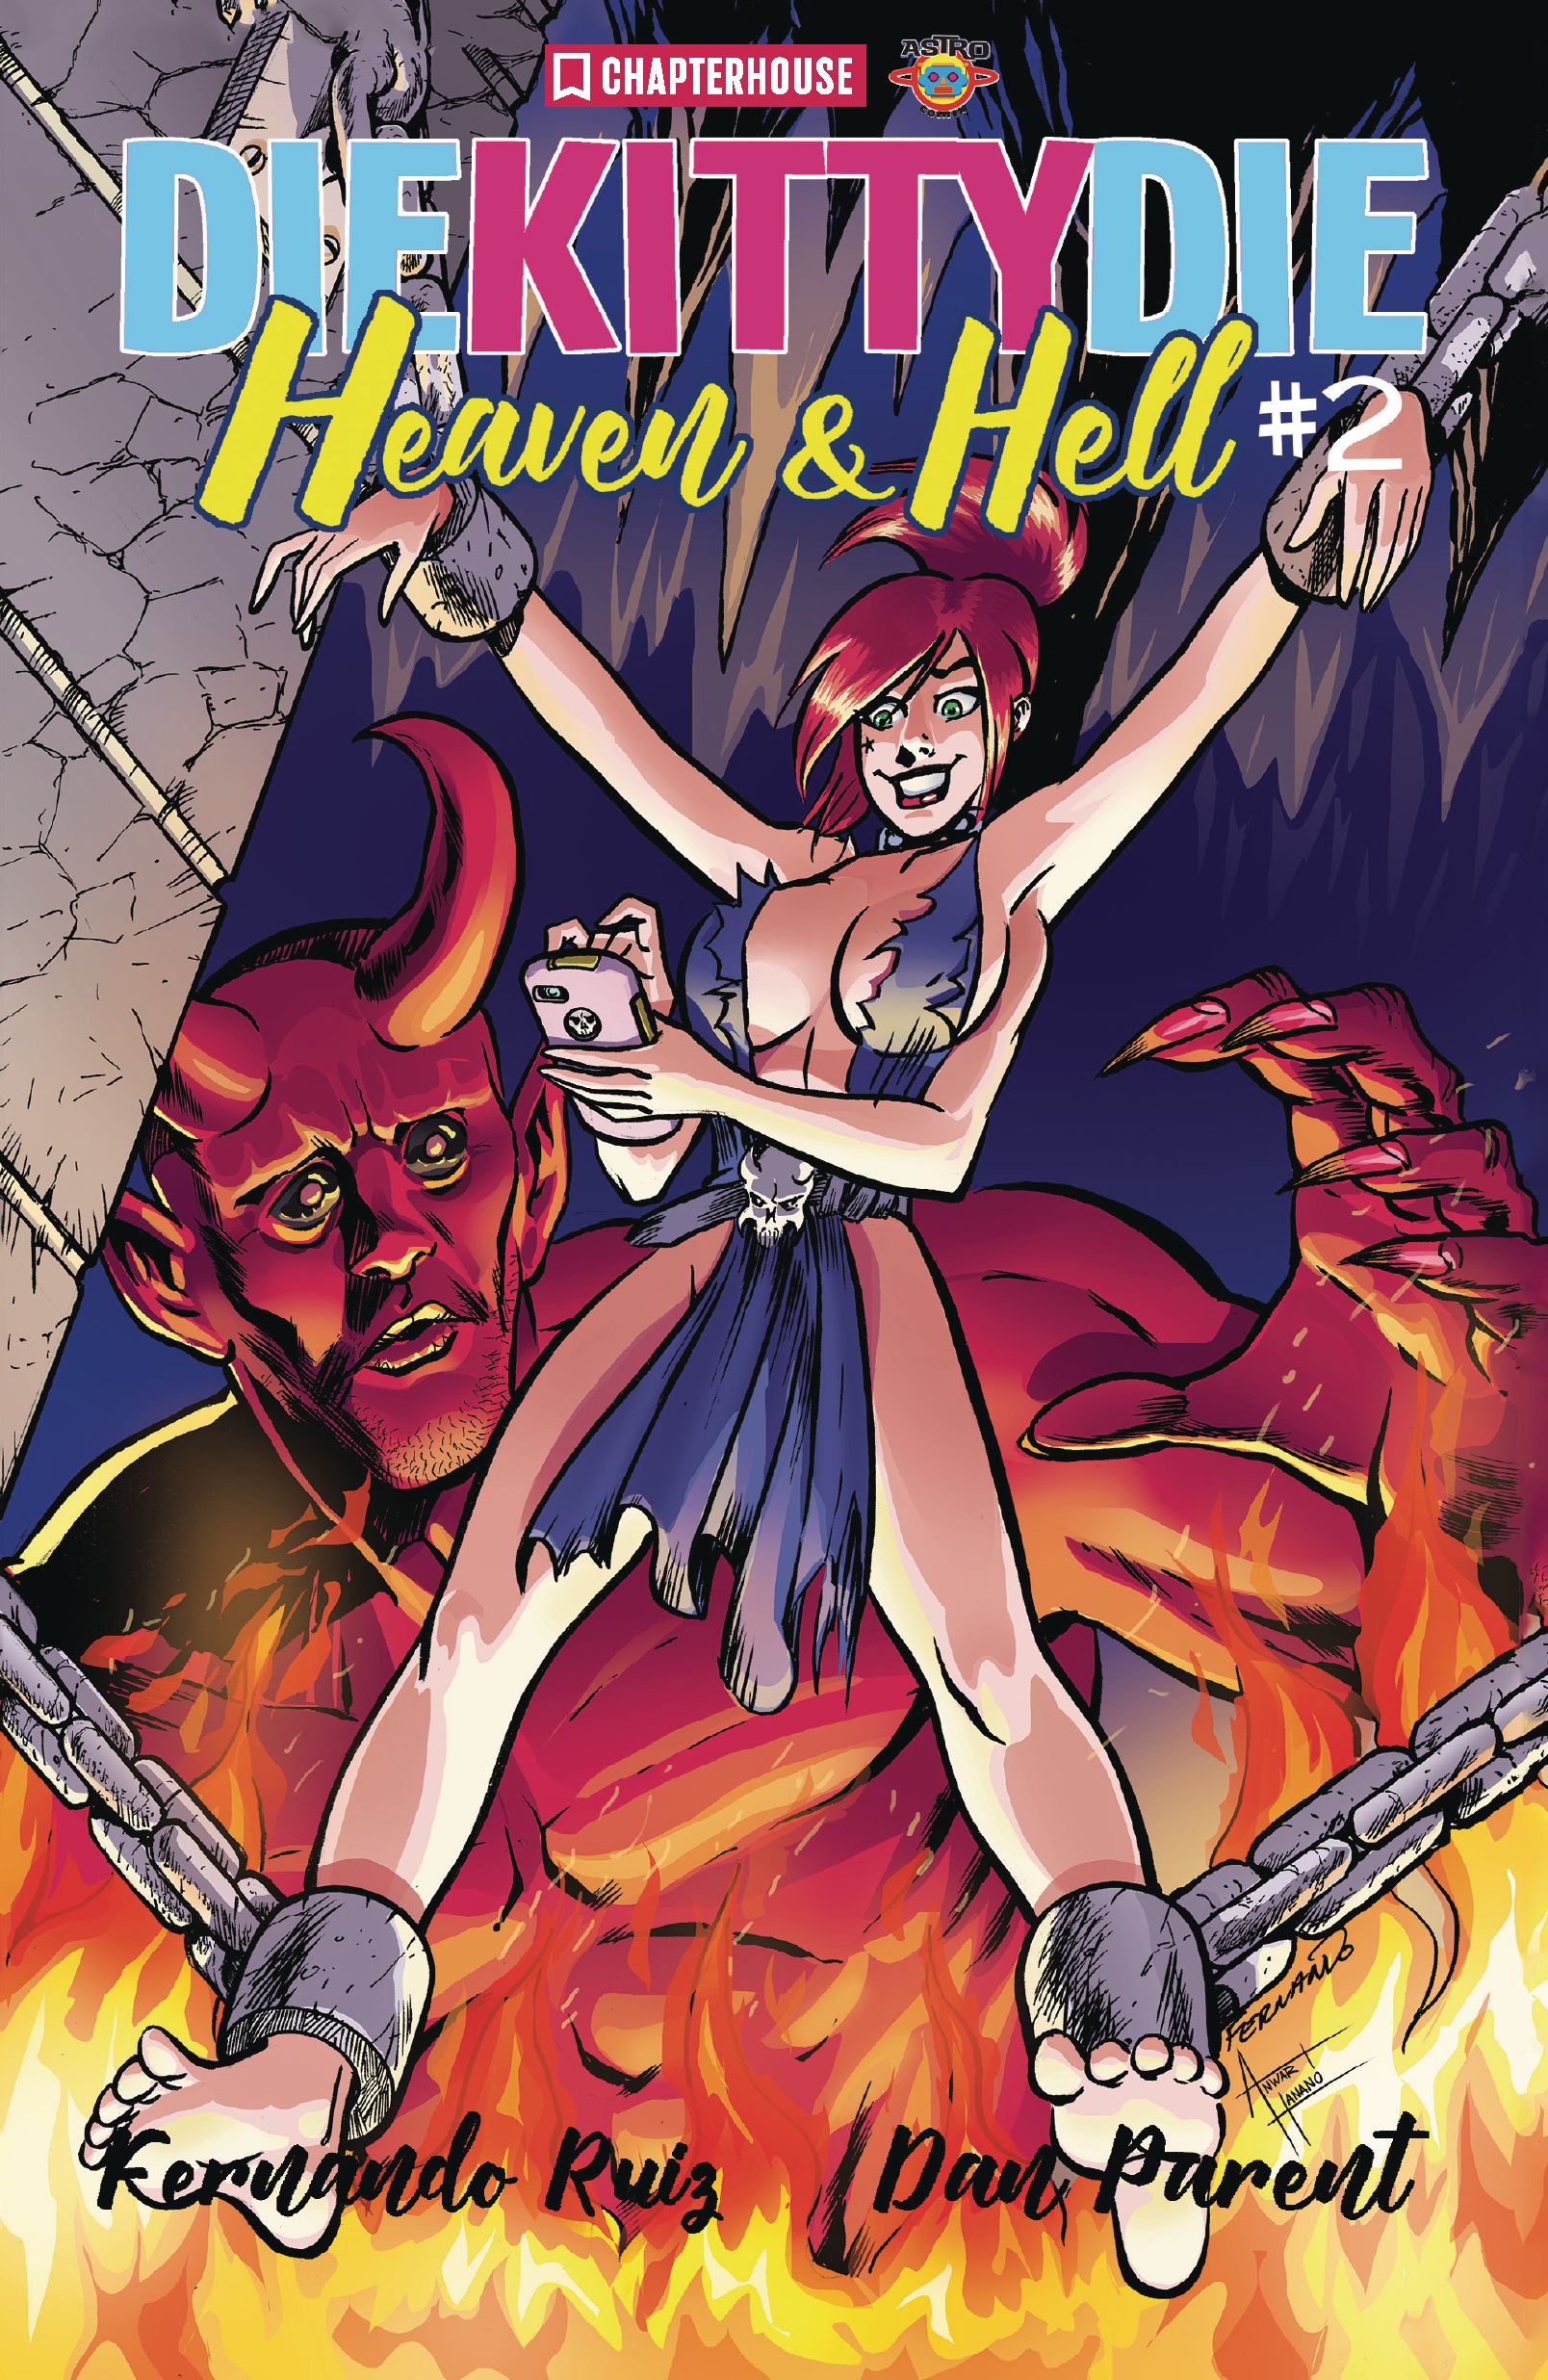 Die Kitty Die! Heaven and Hell #2 Comic